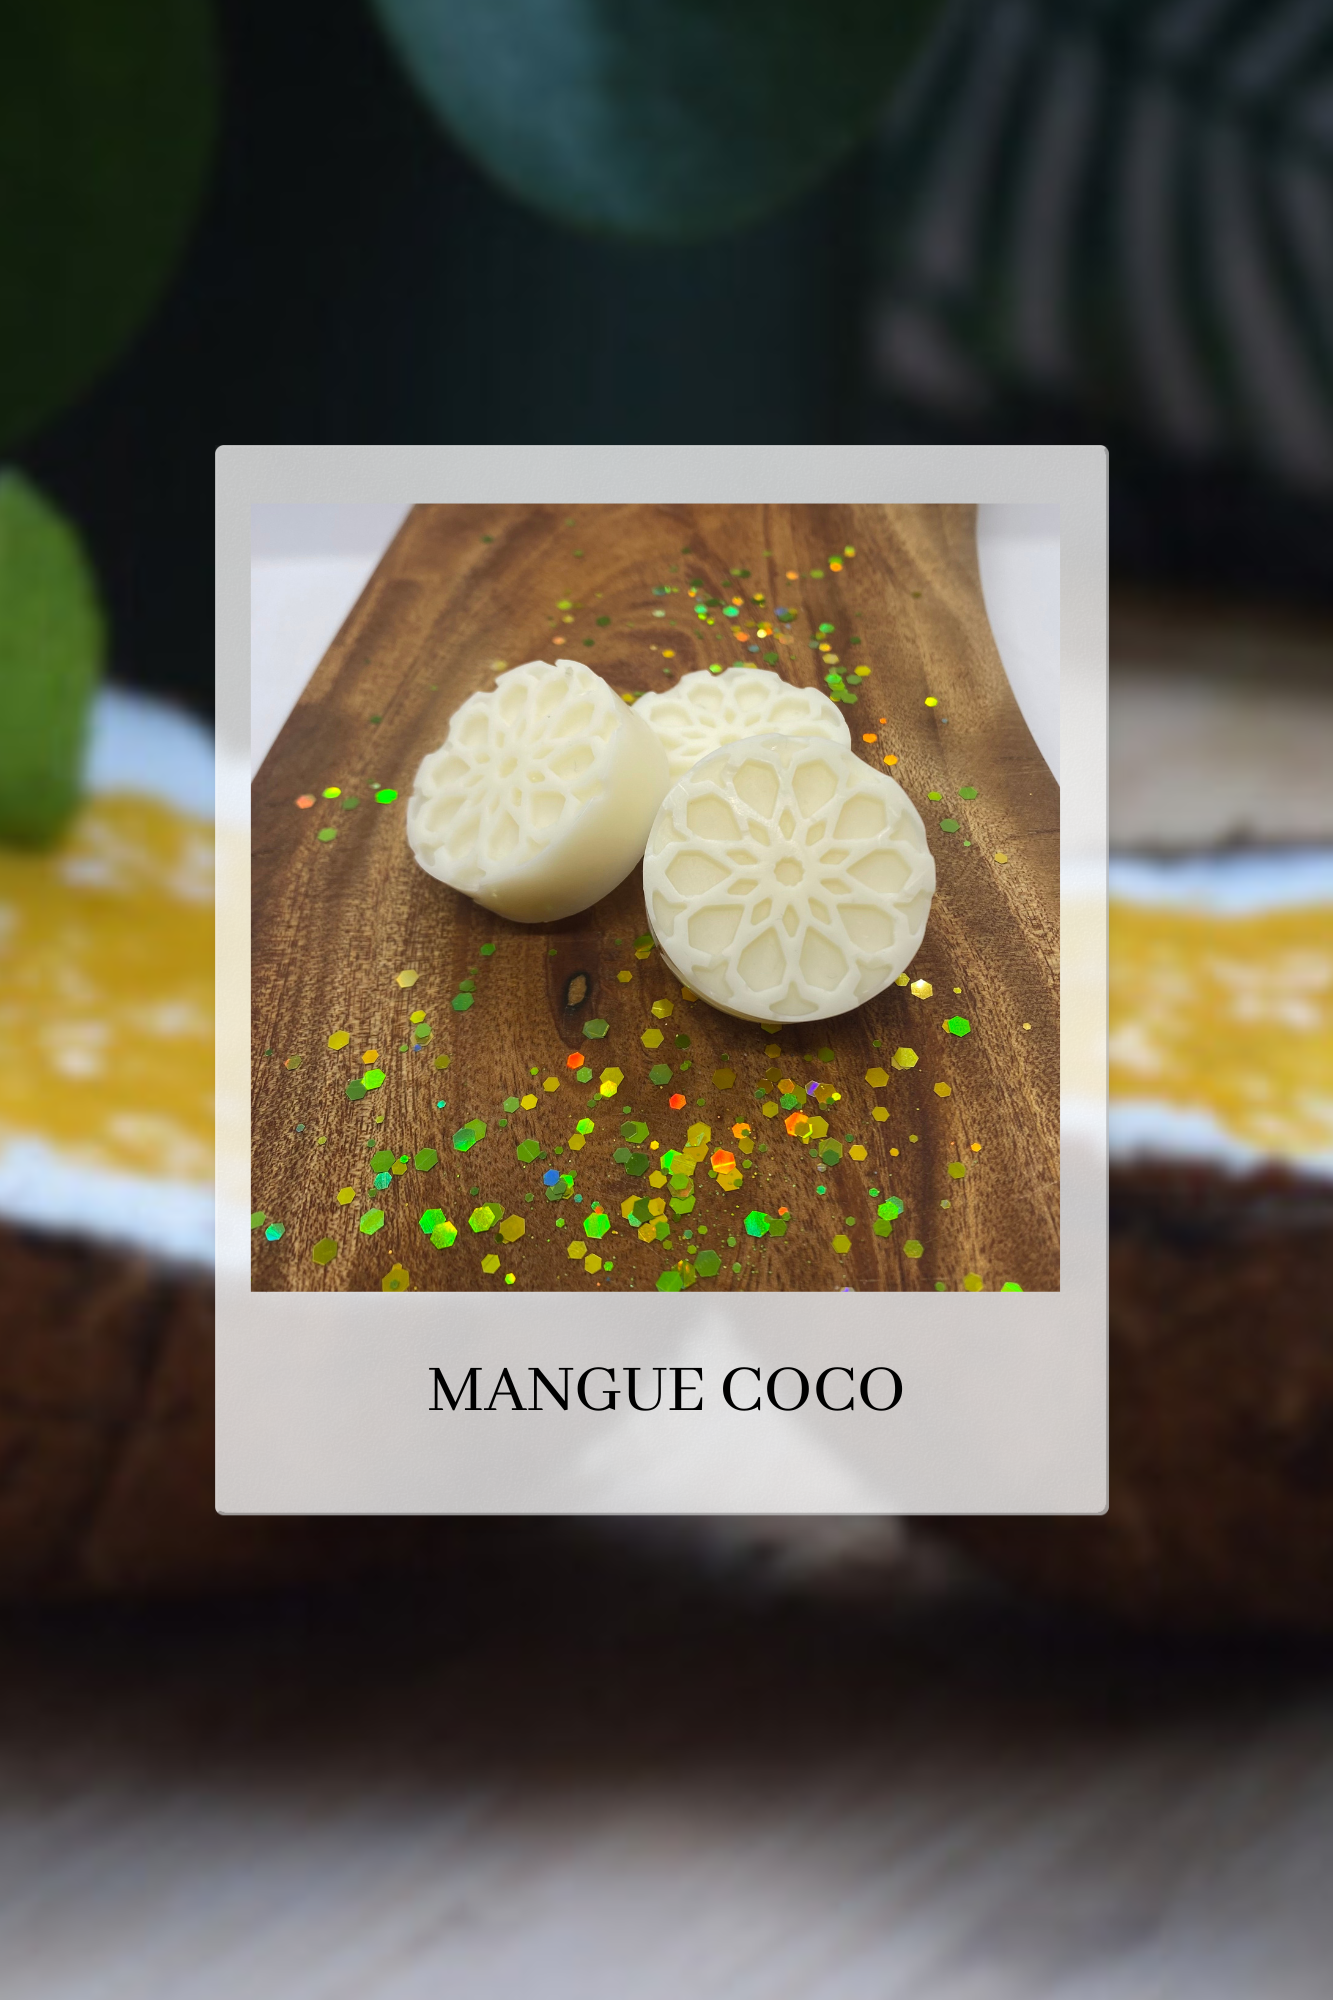 Mangue coco